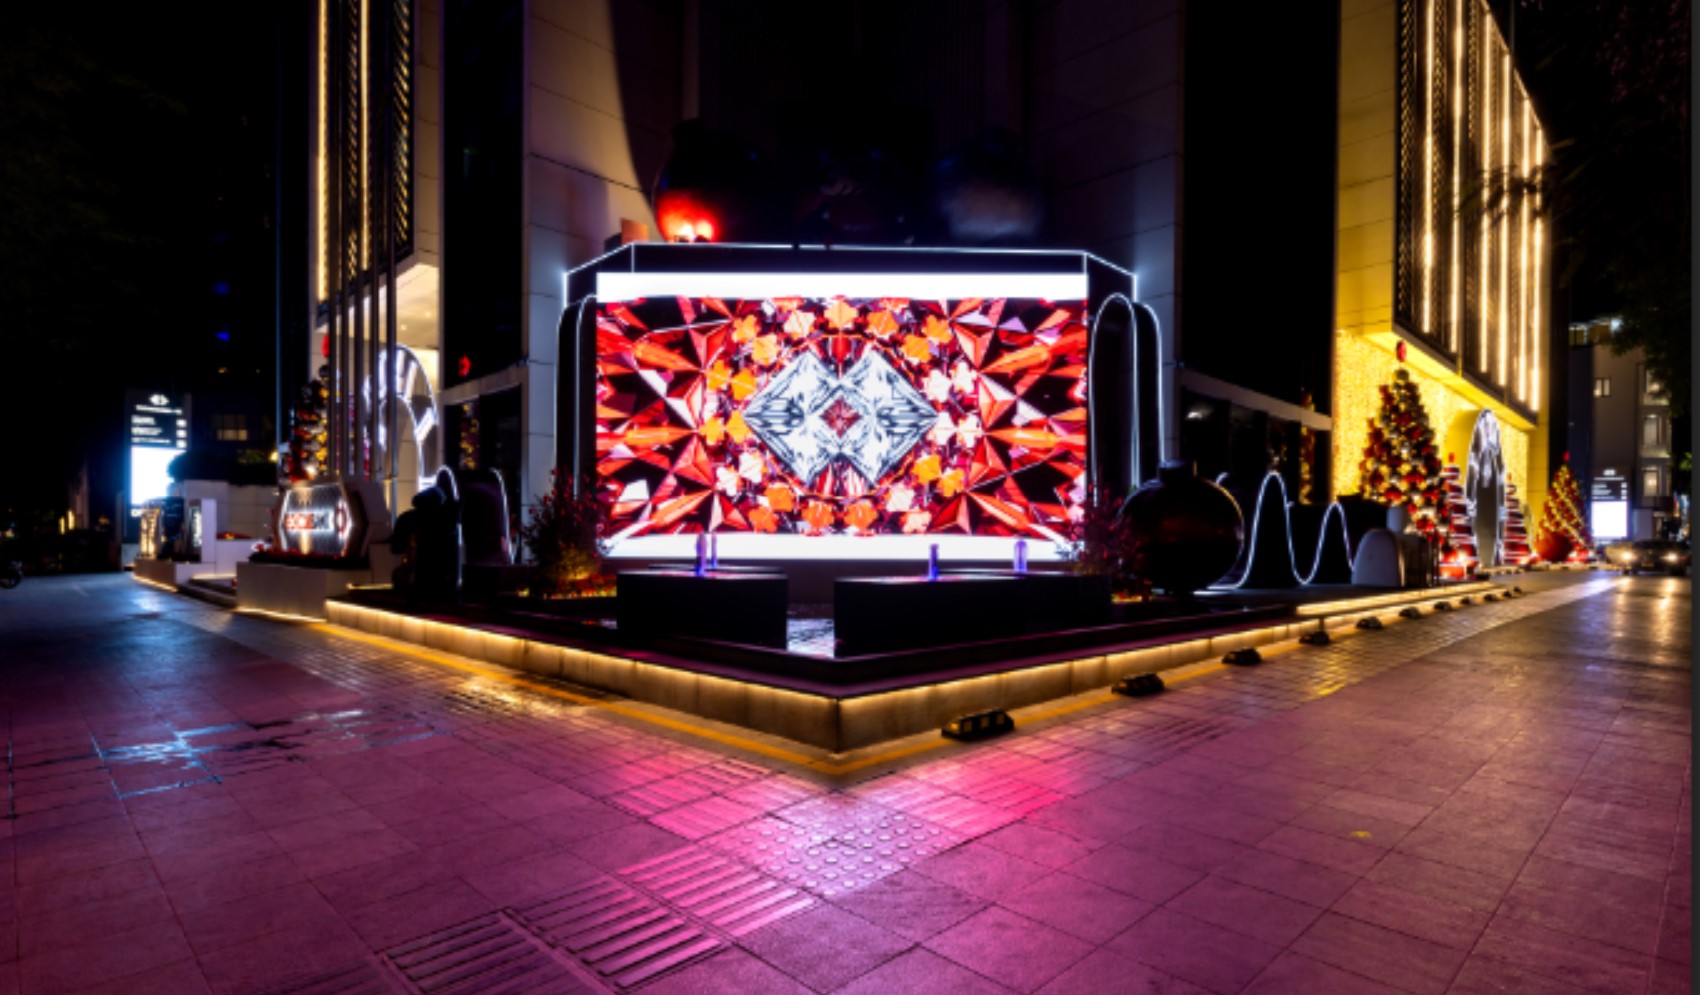  Techcombank làm sáng rực không gian với trang trí giáng sinh ấn tượng tại hai tòa nhà